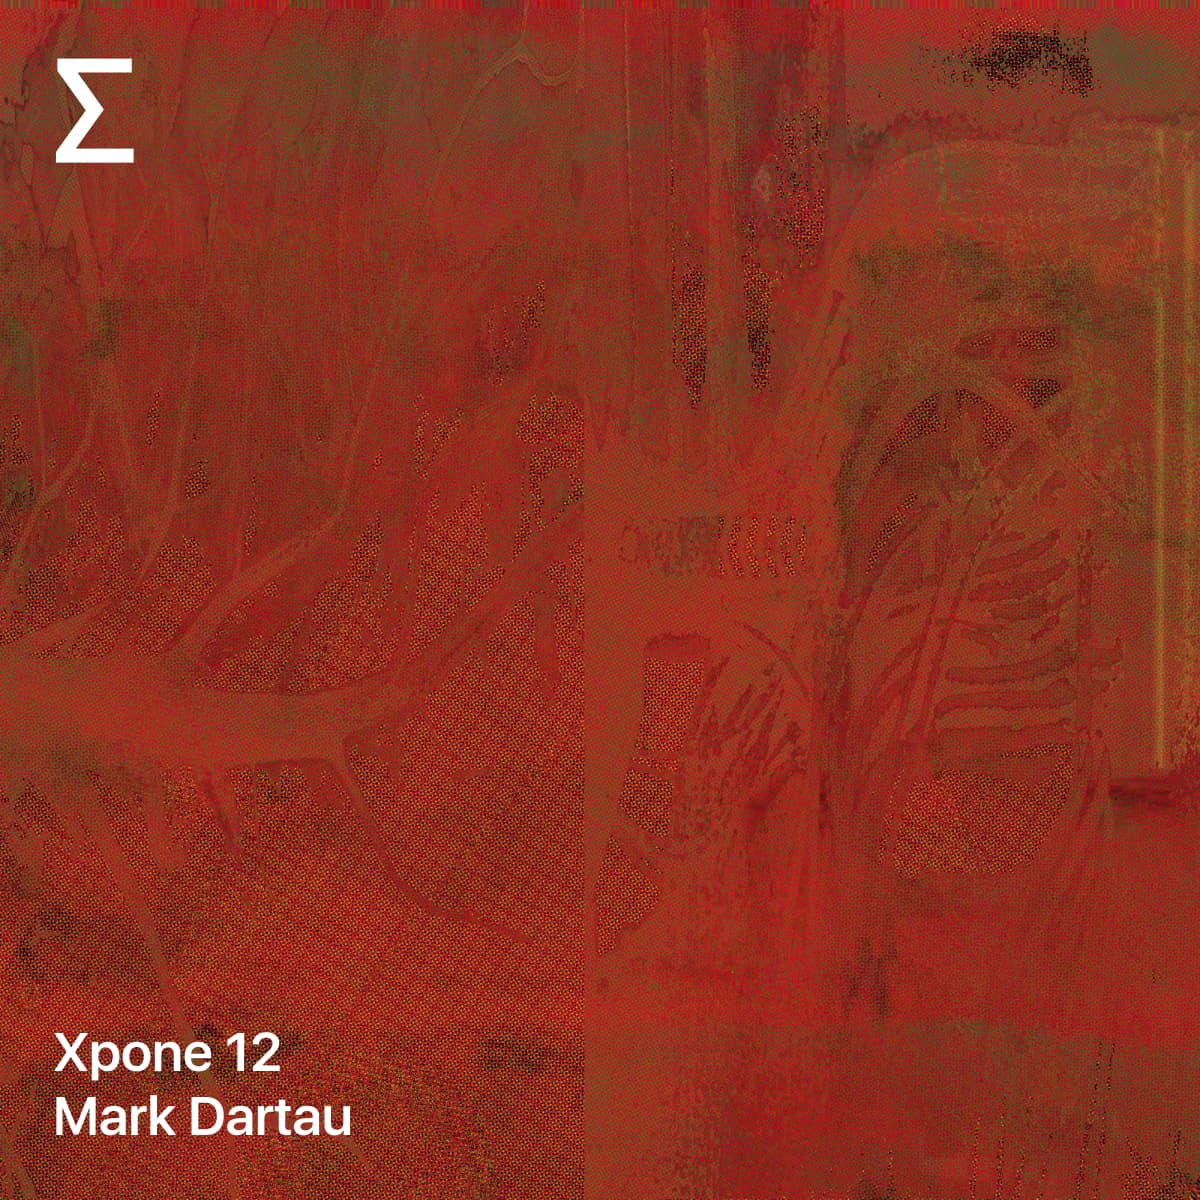 Xpone 12 – Mark Dartau